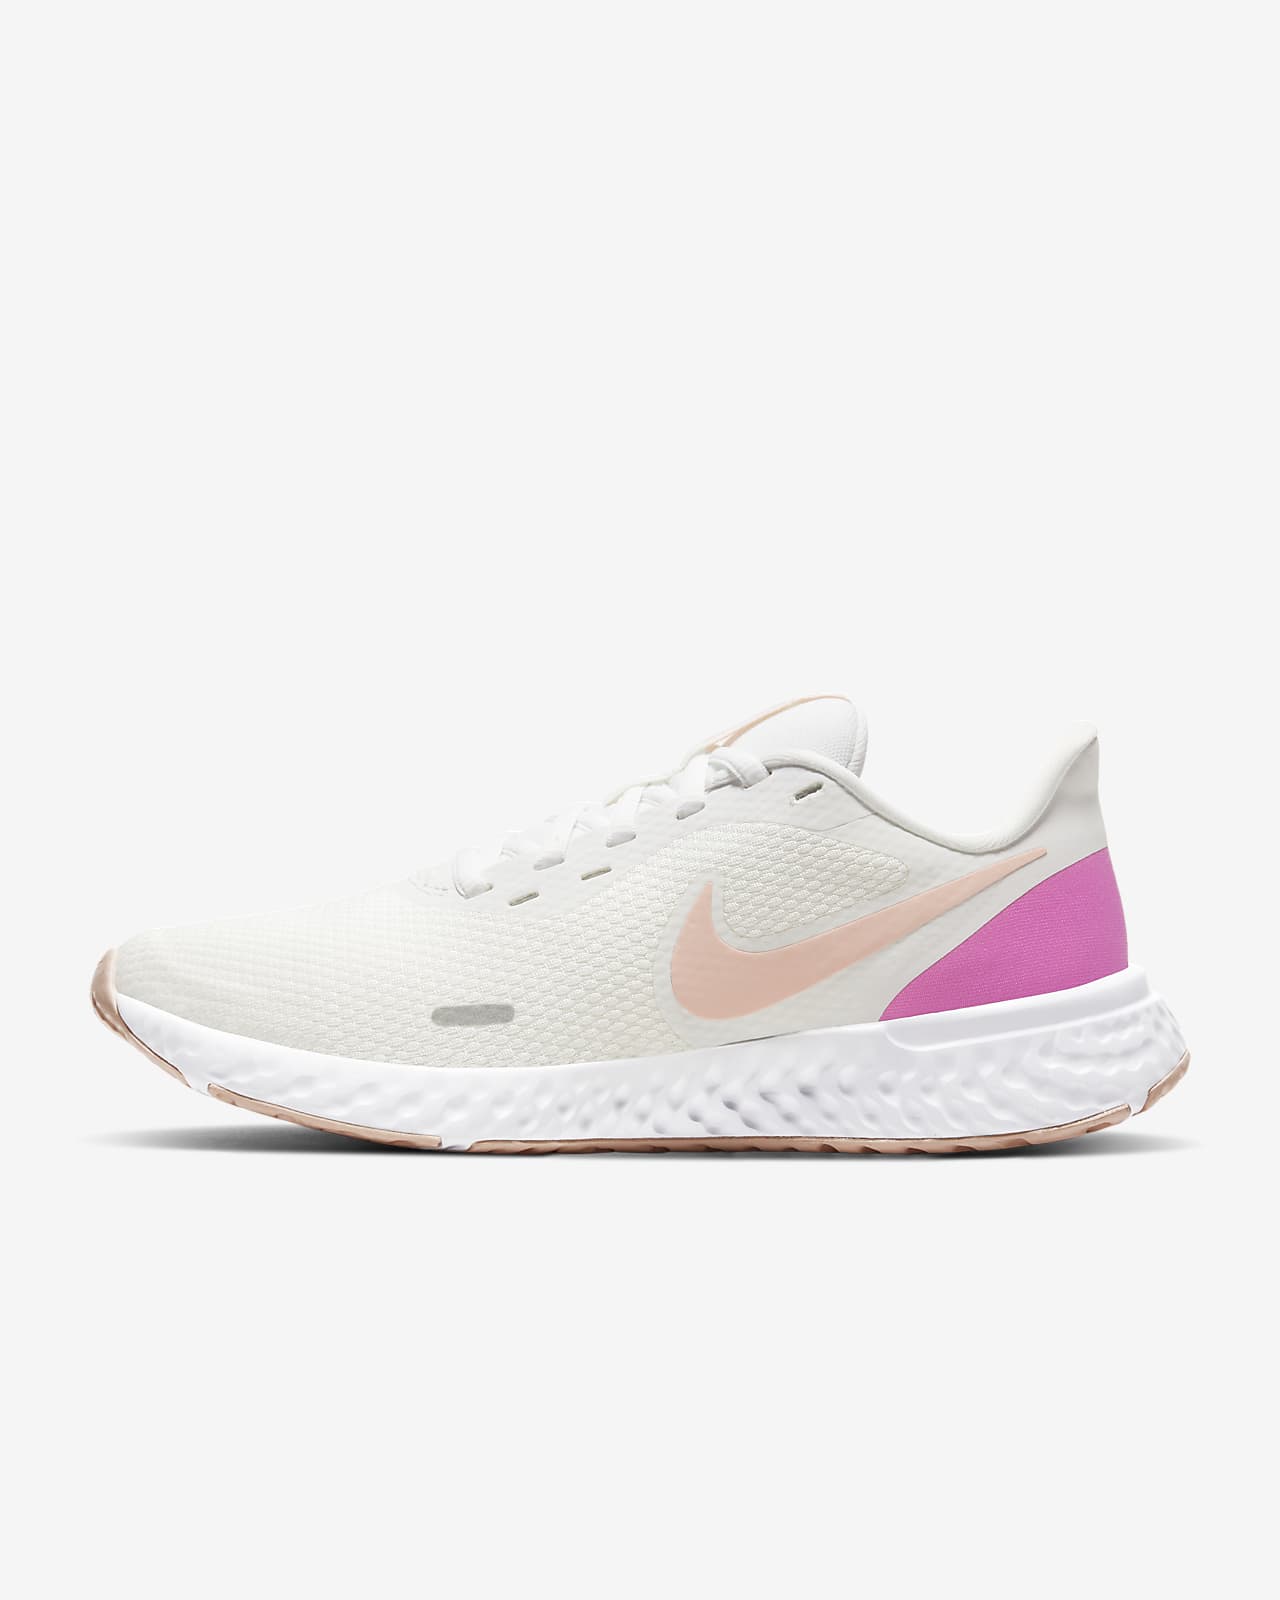 Γυναικεία παπούτσια για τρέξιμο σε δρόμο Nike Revolution 5